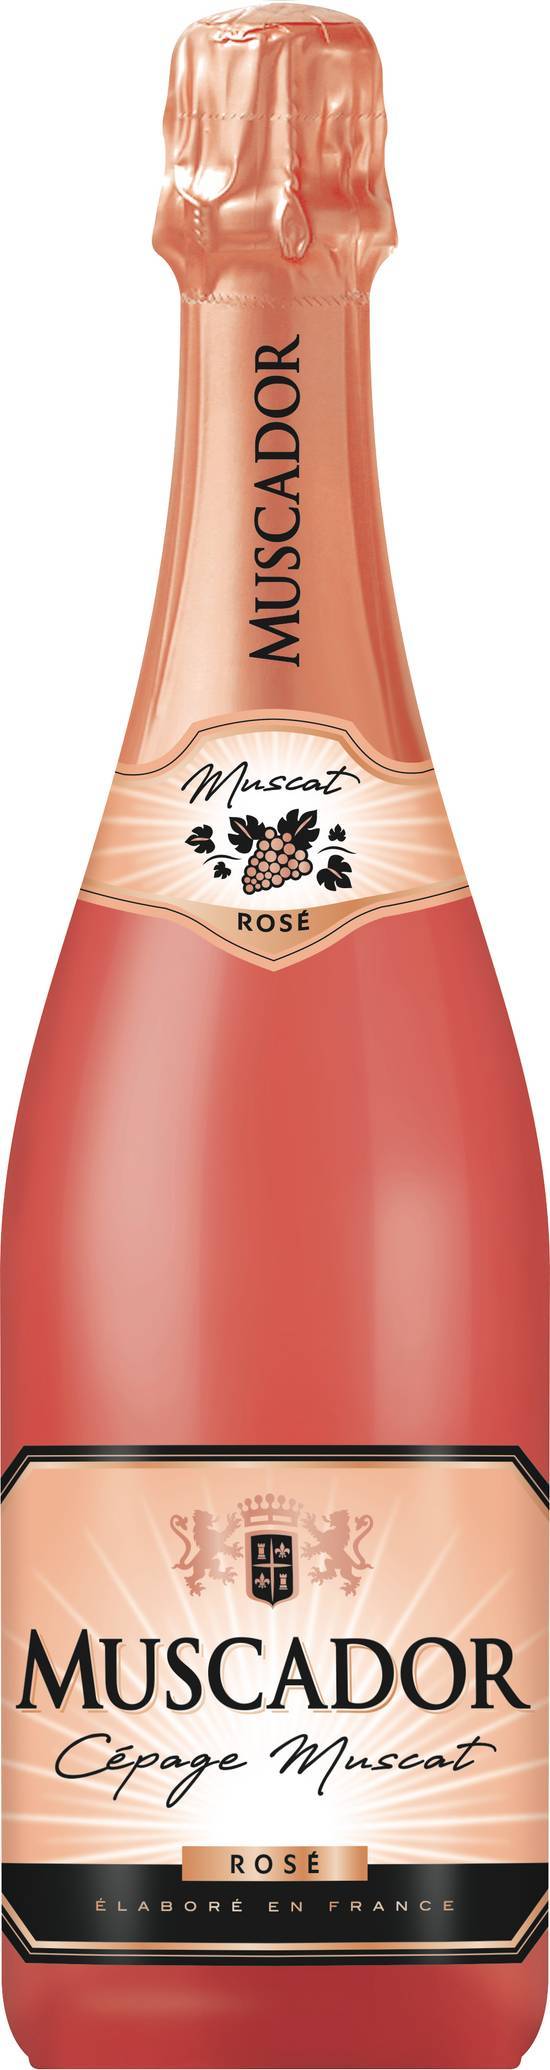 Muscador cépage muscat vin pétillant rosé (75 cl)